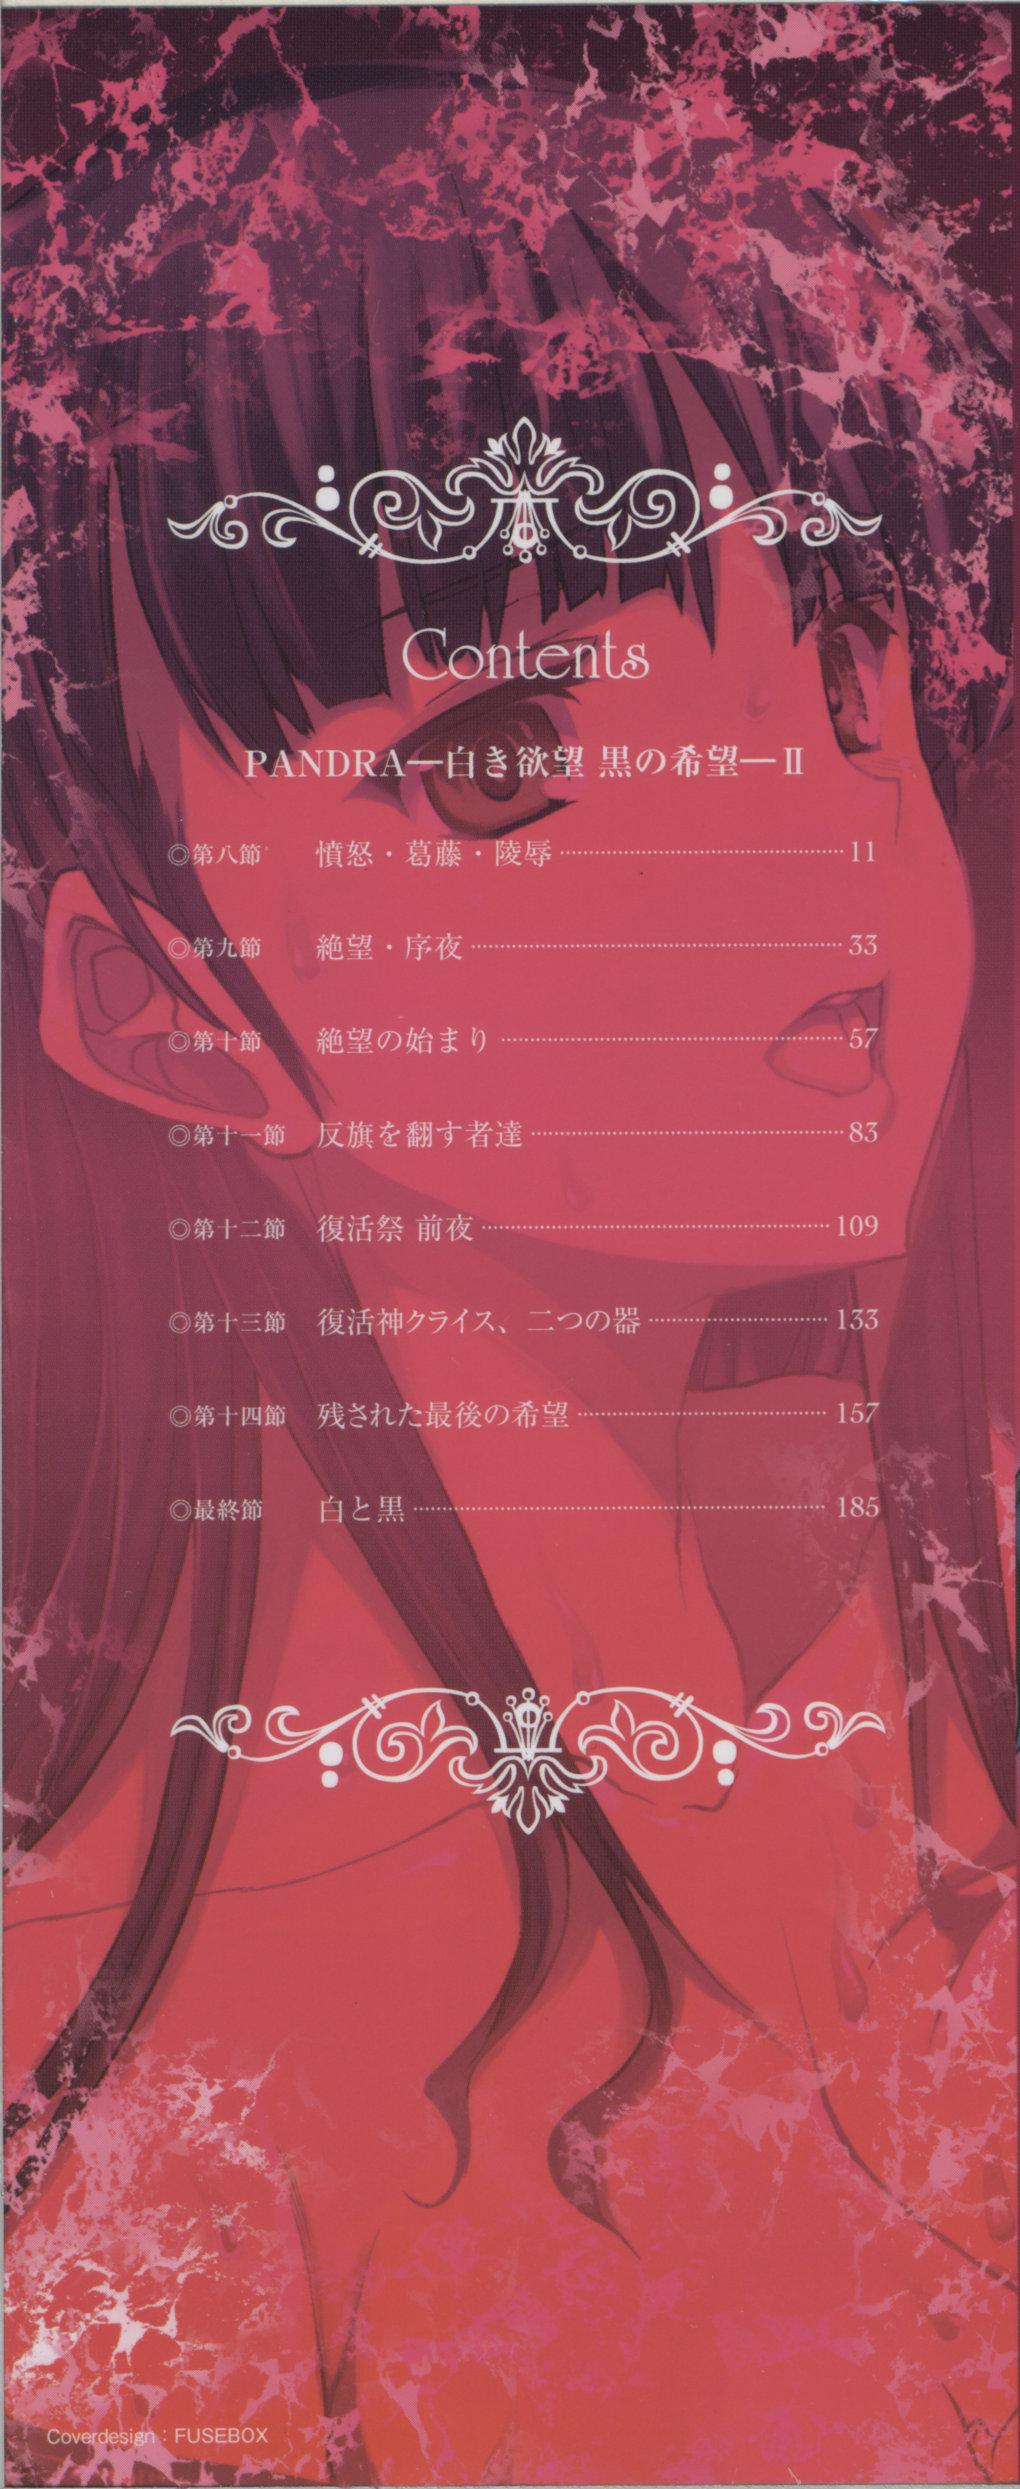 HD [Erect Sawaru] Pandra -Shiroki Yokubou Kuro no Kibou- II 1080p - Page 3